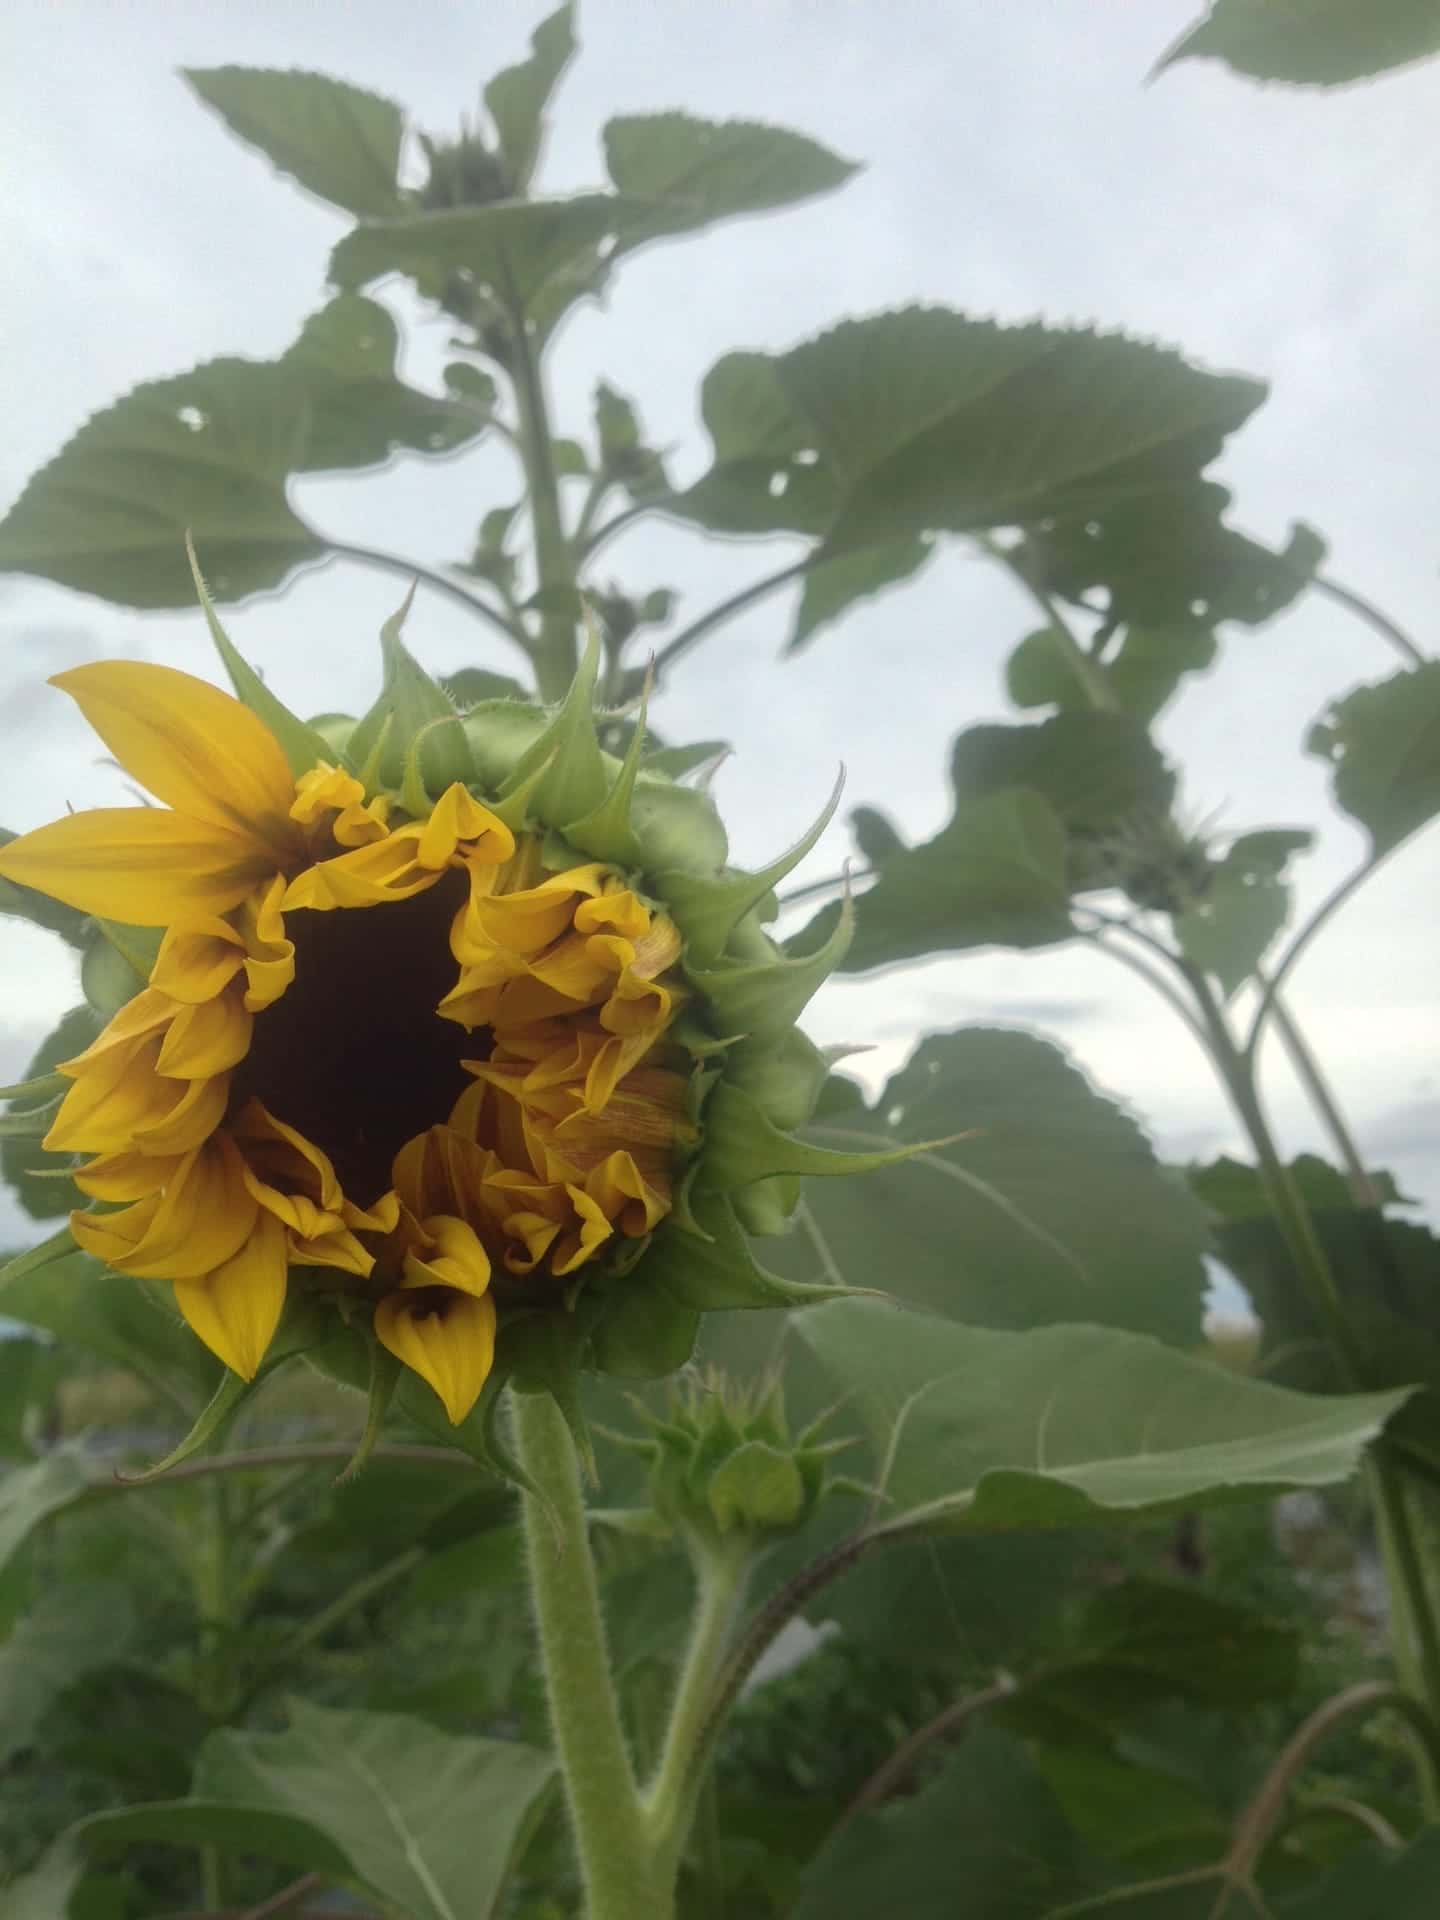 Opening Sunflower - It is raining zucchini!